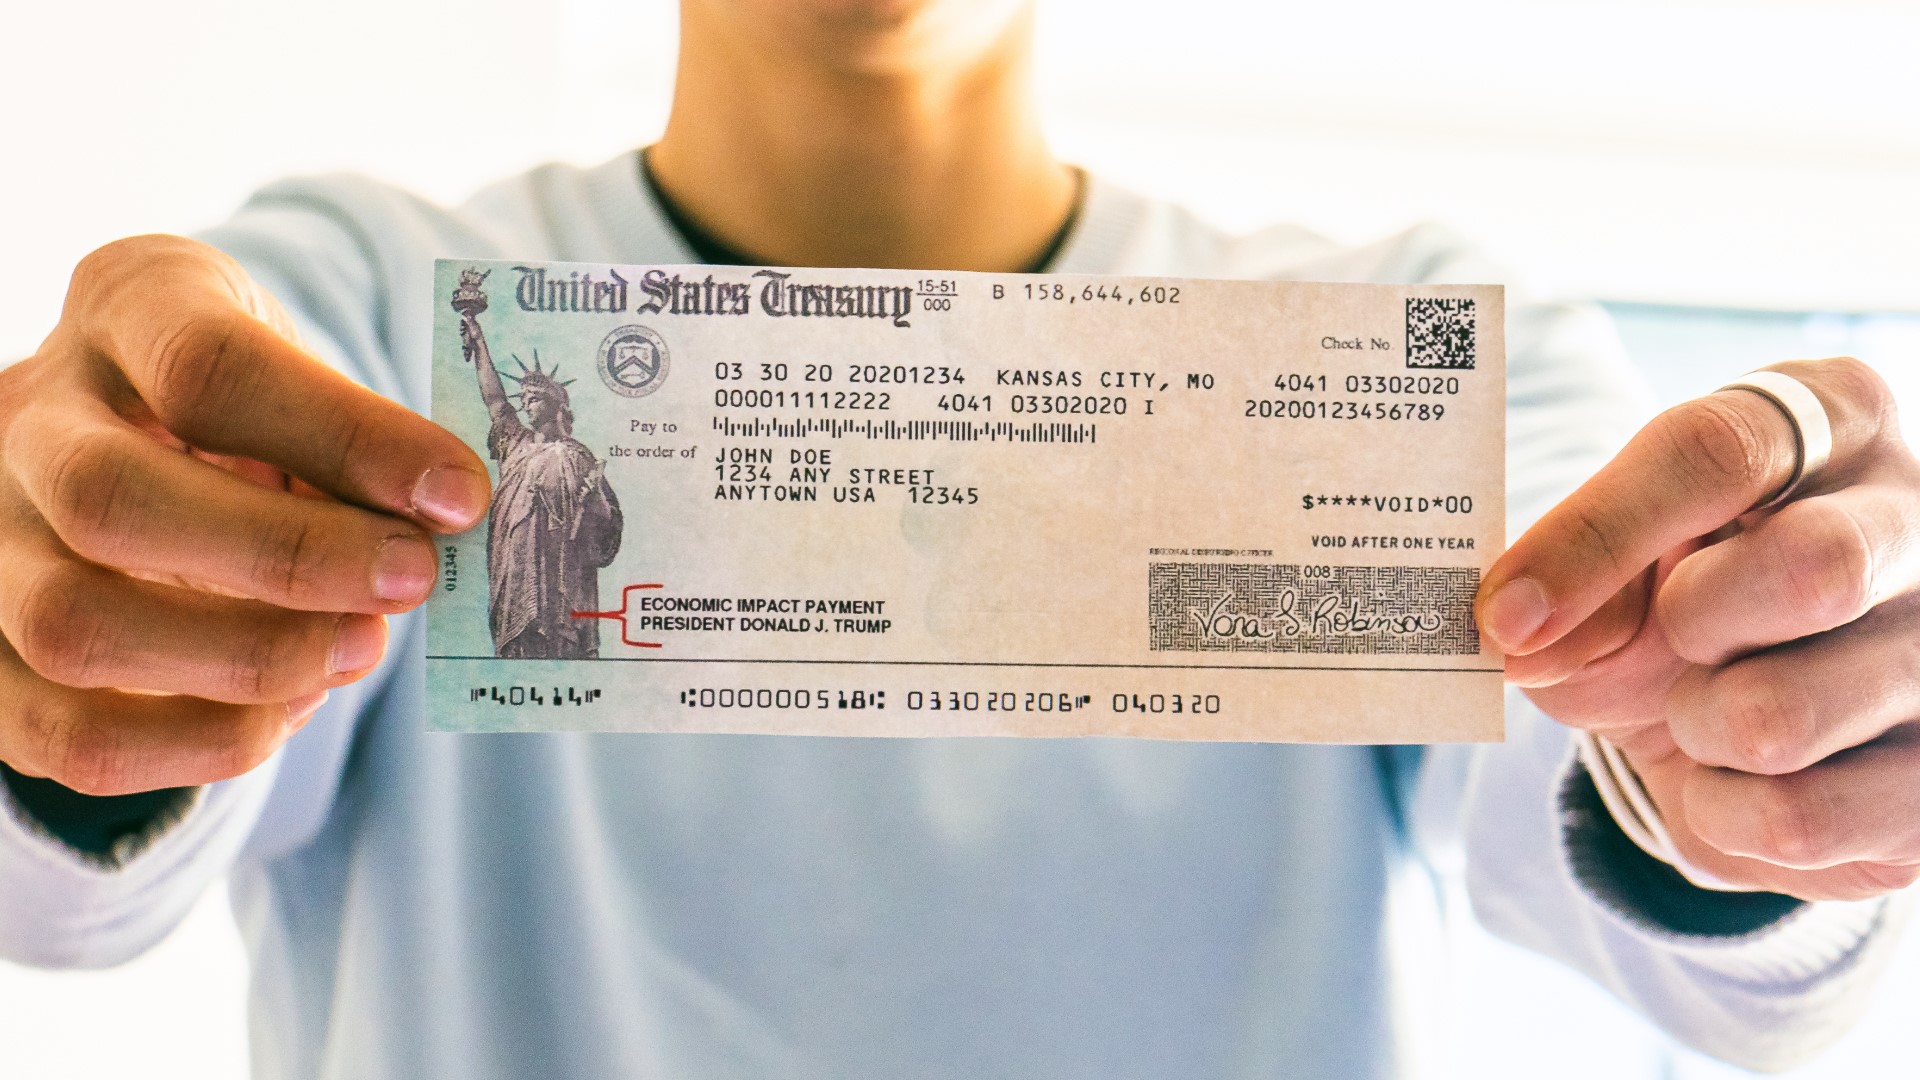 Third stimulus check VA recipient payment date still unknown